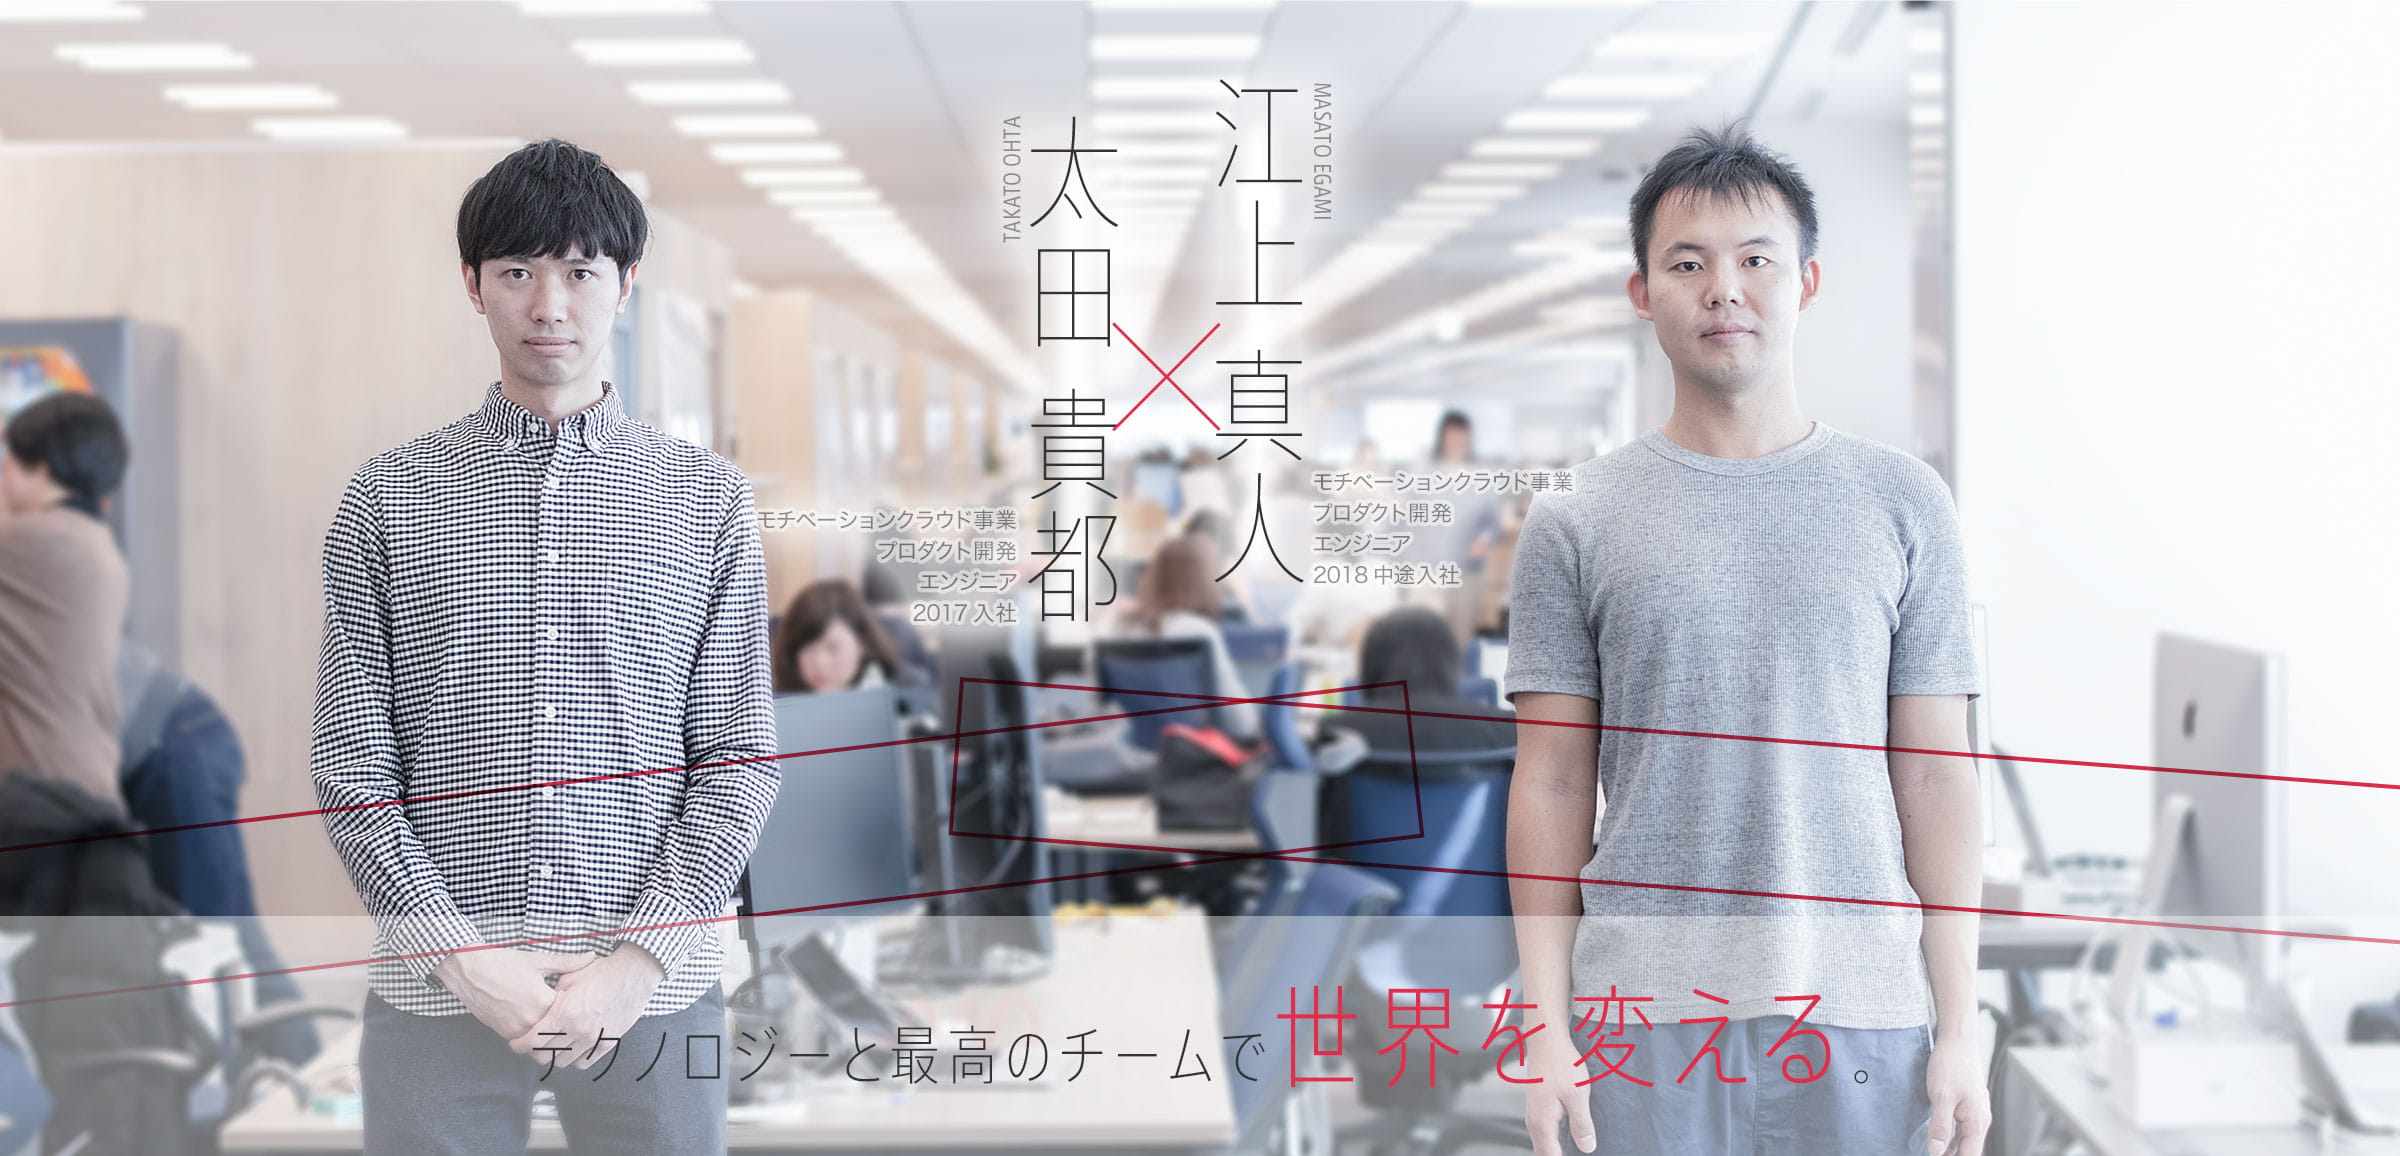 太田 貴都 x 江上 真人 テクノロジーと最高のチームで世界を変える